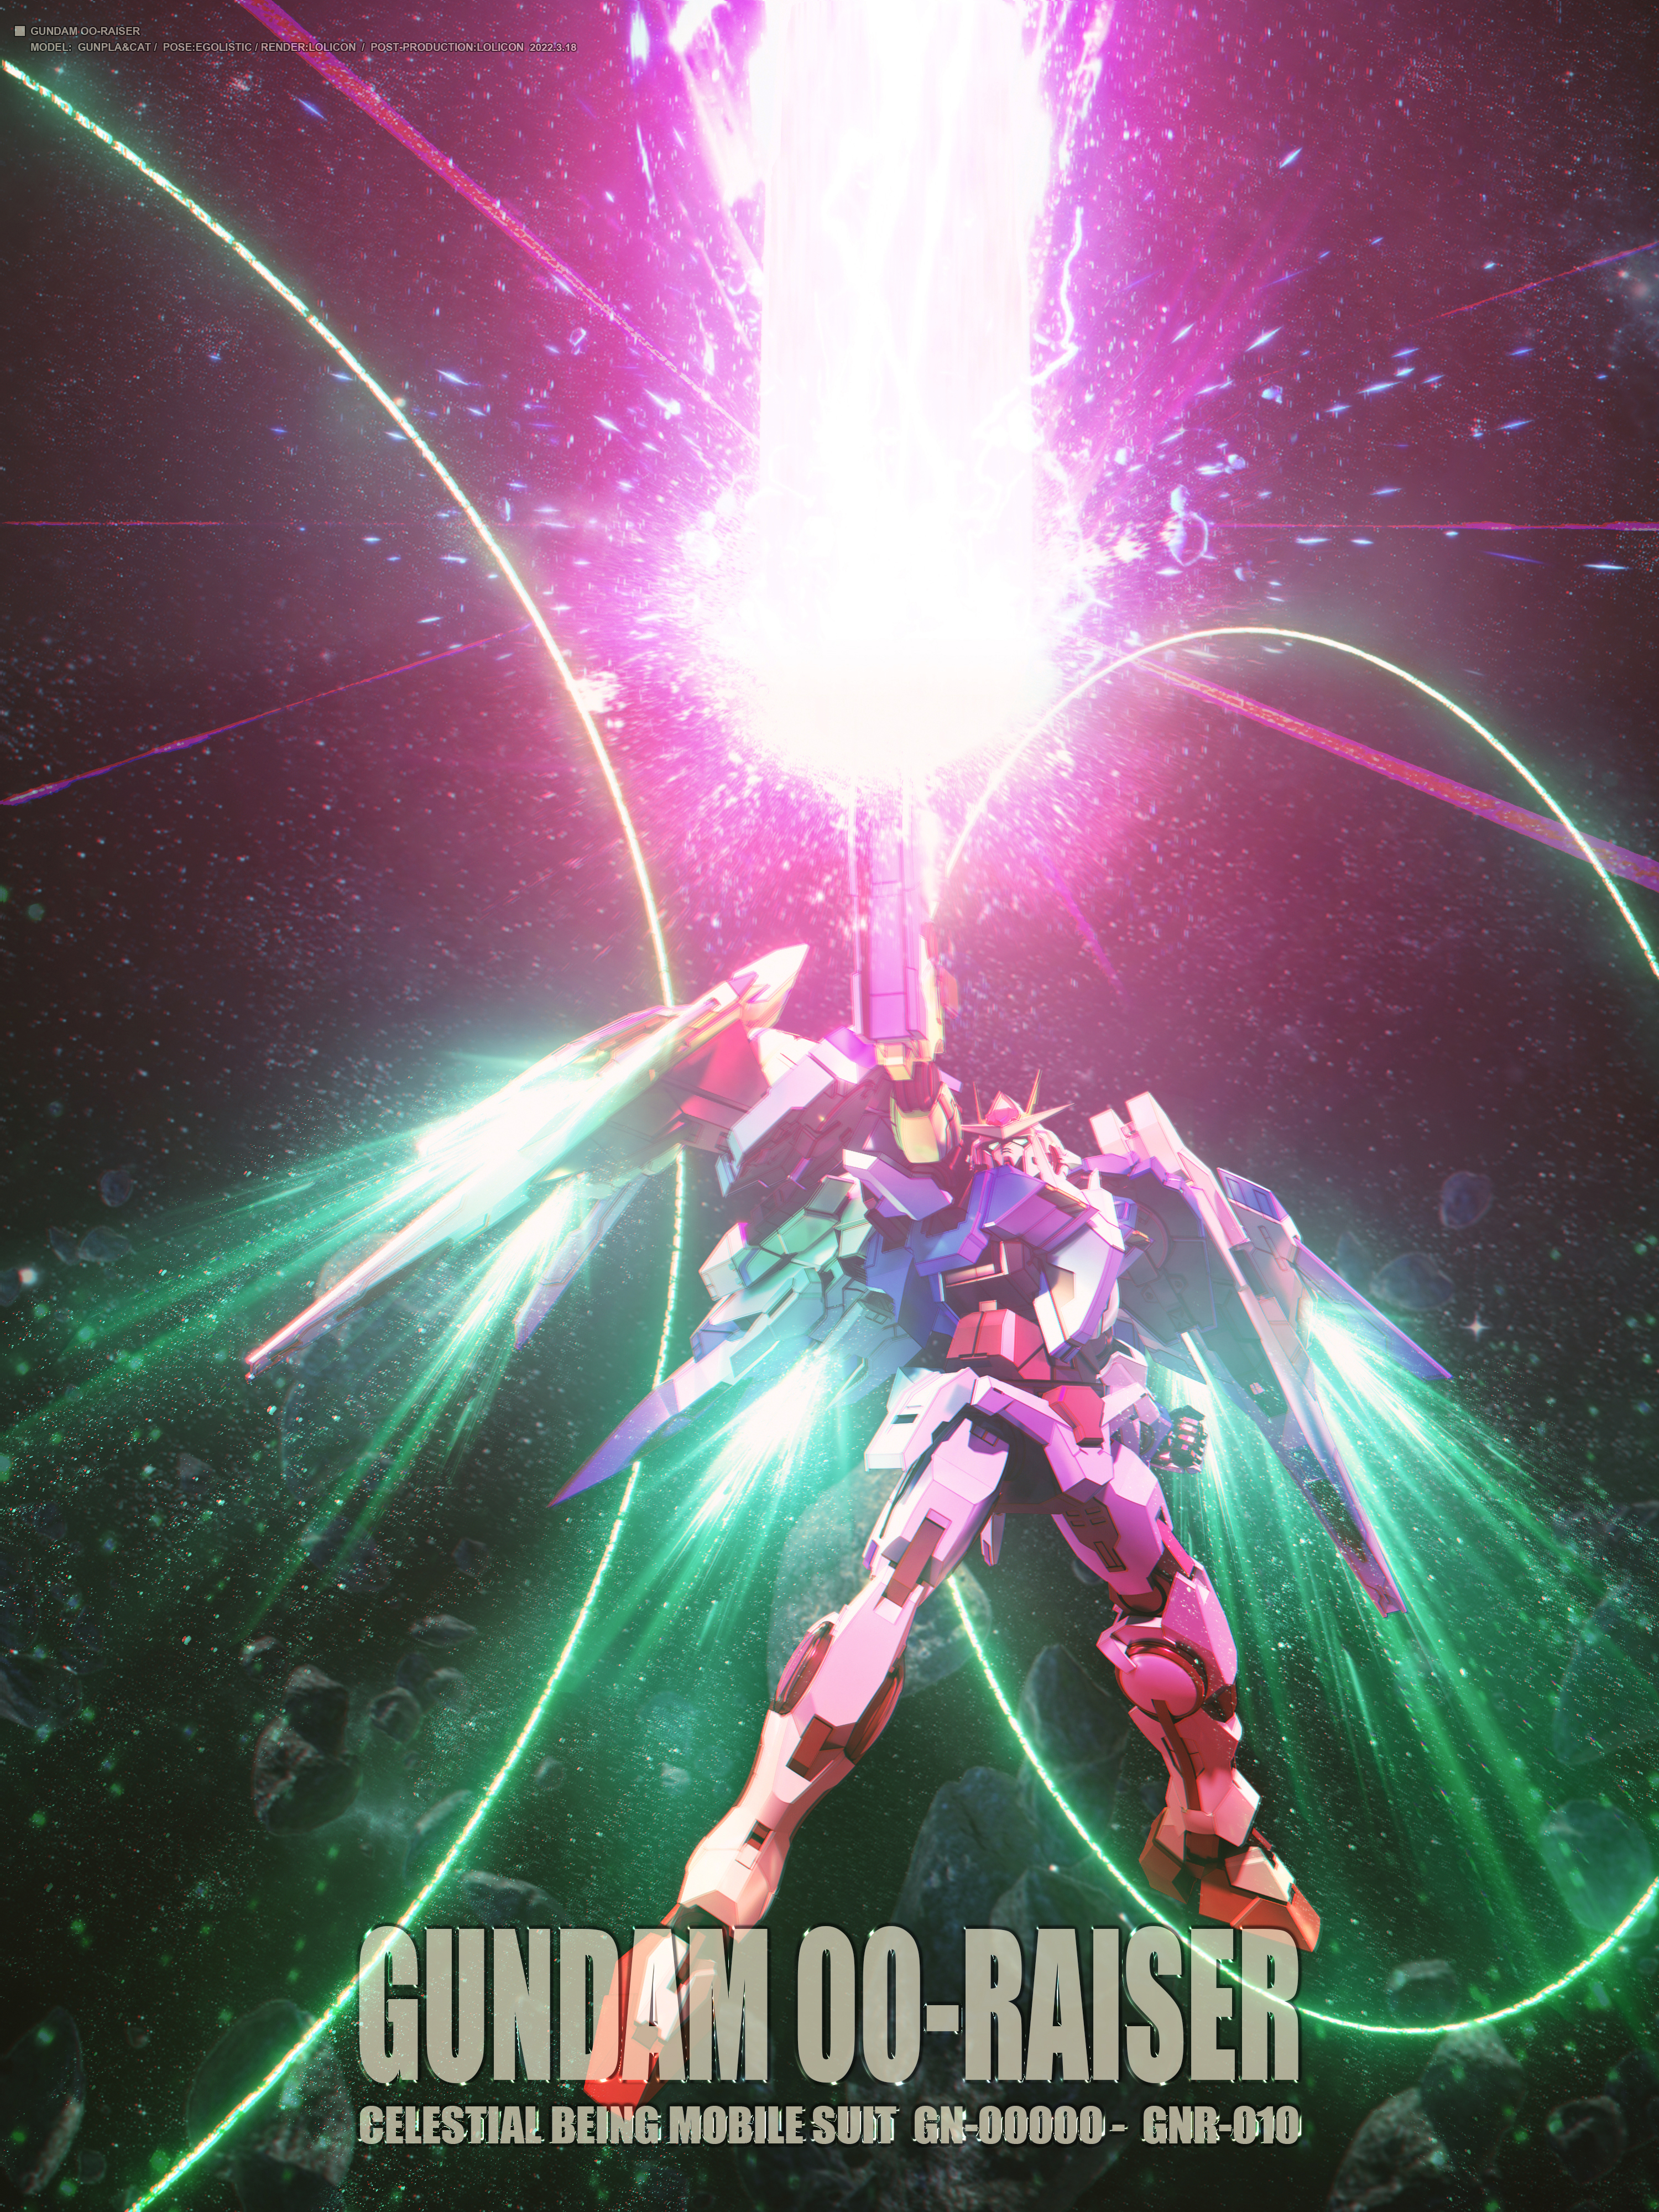 Anime Mechs Gundam Super Robot Taisen 00 Raiser Mobile Suit Gundam 00 Artwork Digital Art Fan Art 3000x4000